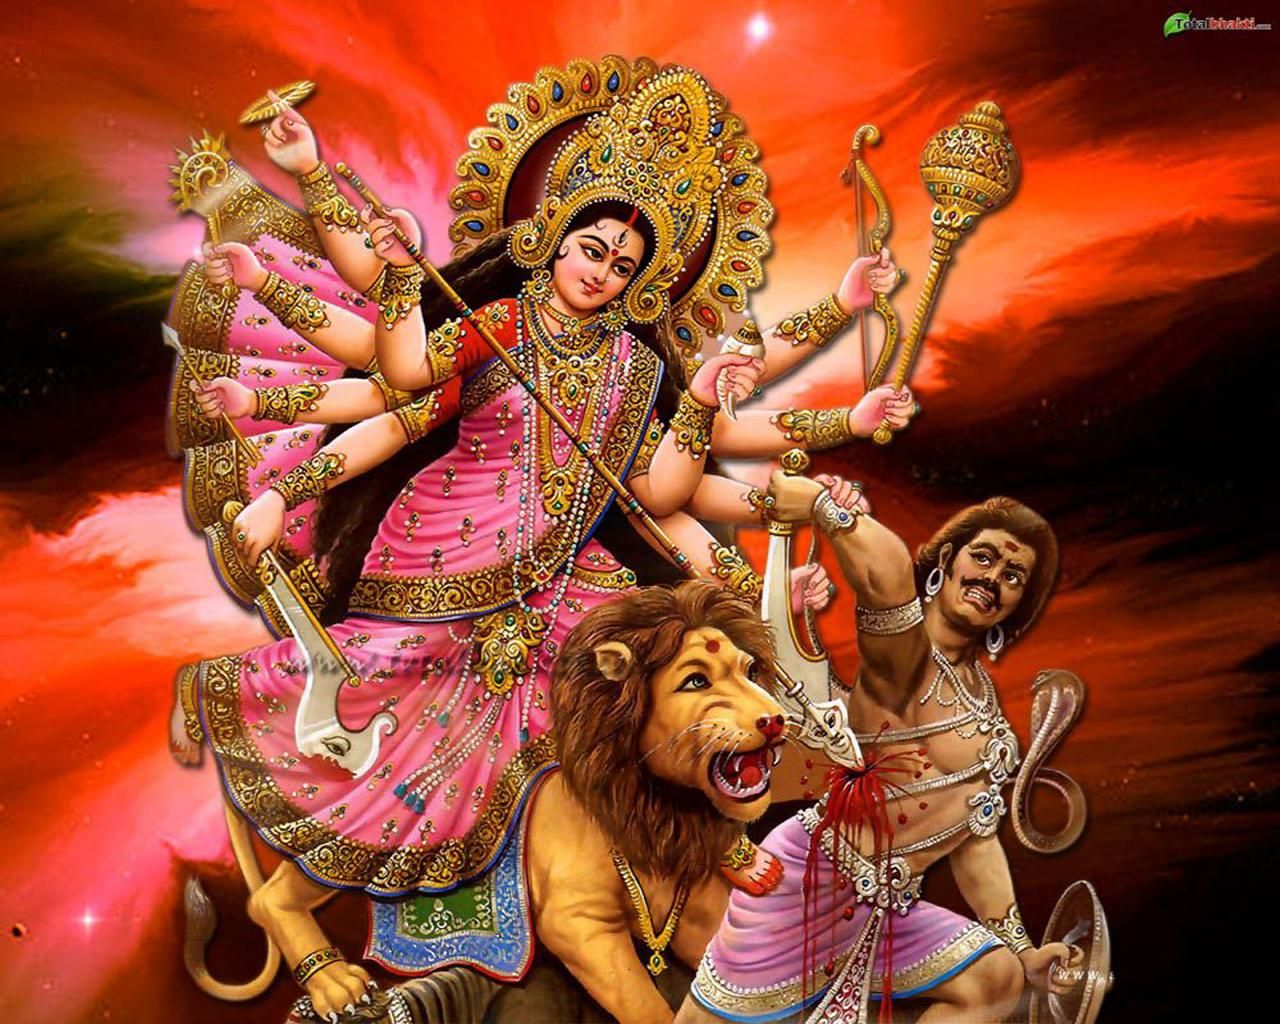 40+] Durga Wallpaper - WallpaperSafari